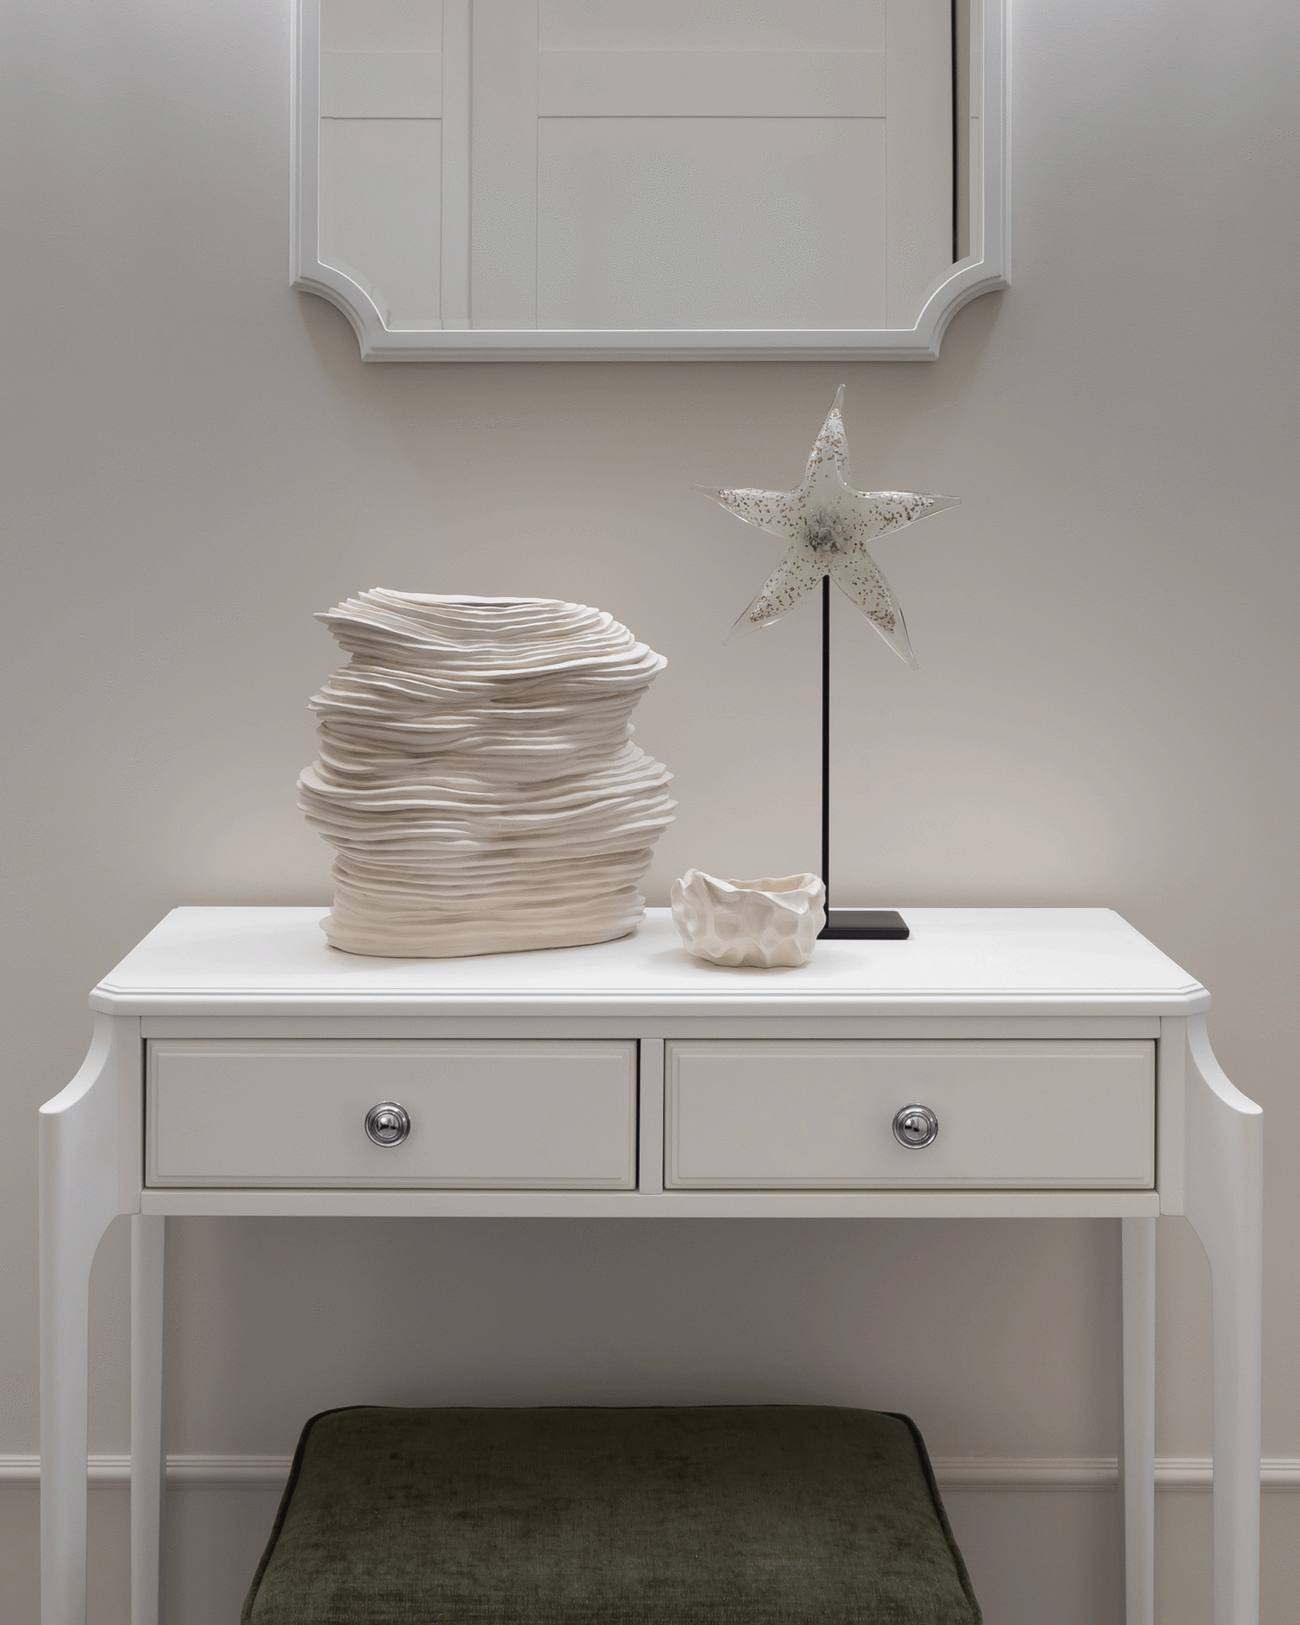 Khu vực lối vào nhà cũng được trang trí những món phụ kiện tương tự, xếp đặt trên chiếc tủ lưu trữ màu trắng cùng tấm gương phía trên cho cảm giác không gian rộng rãi hơn.